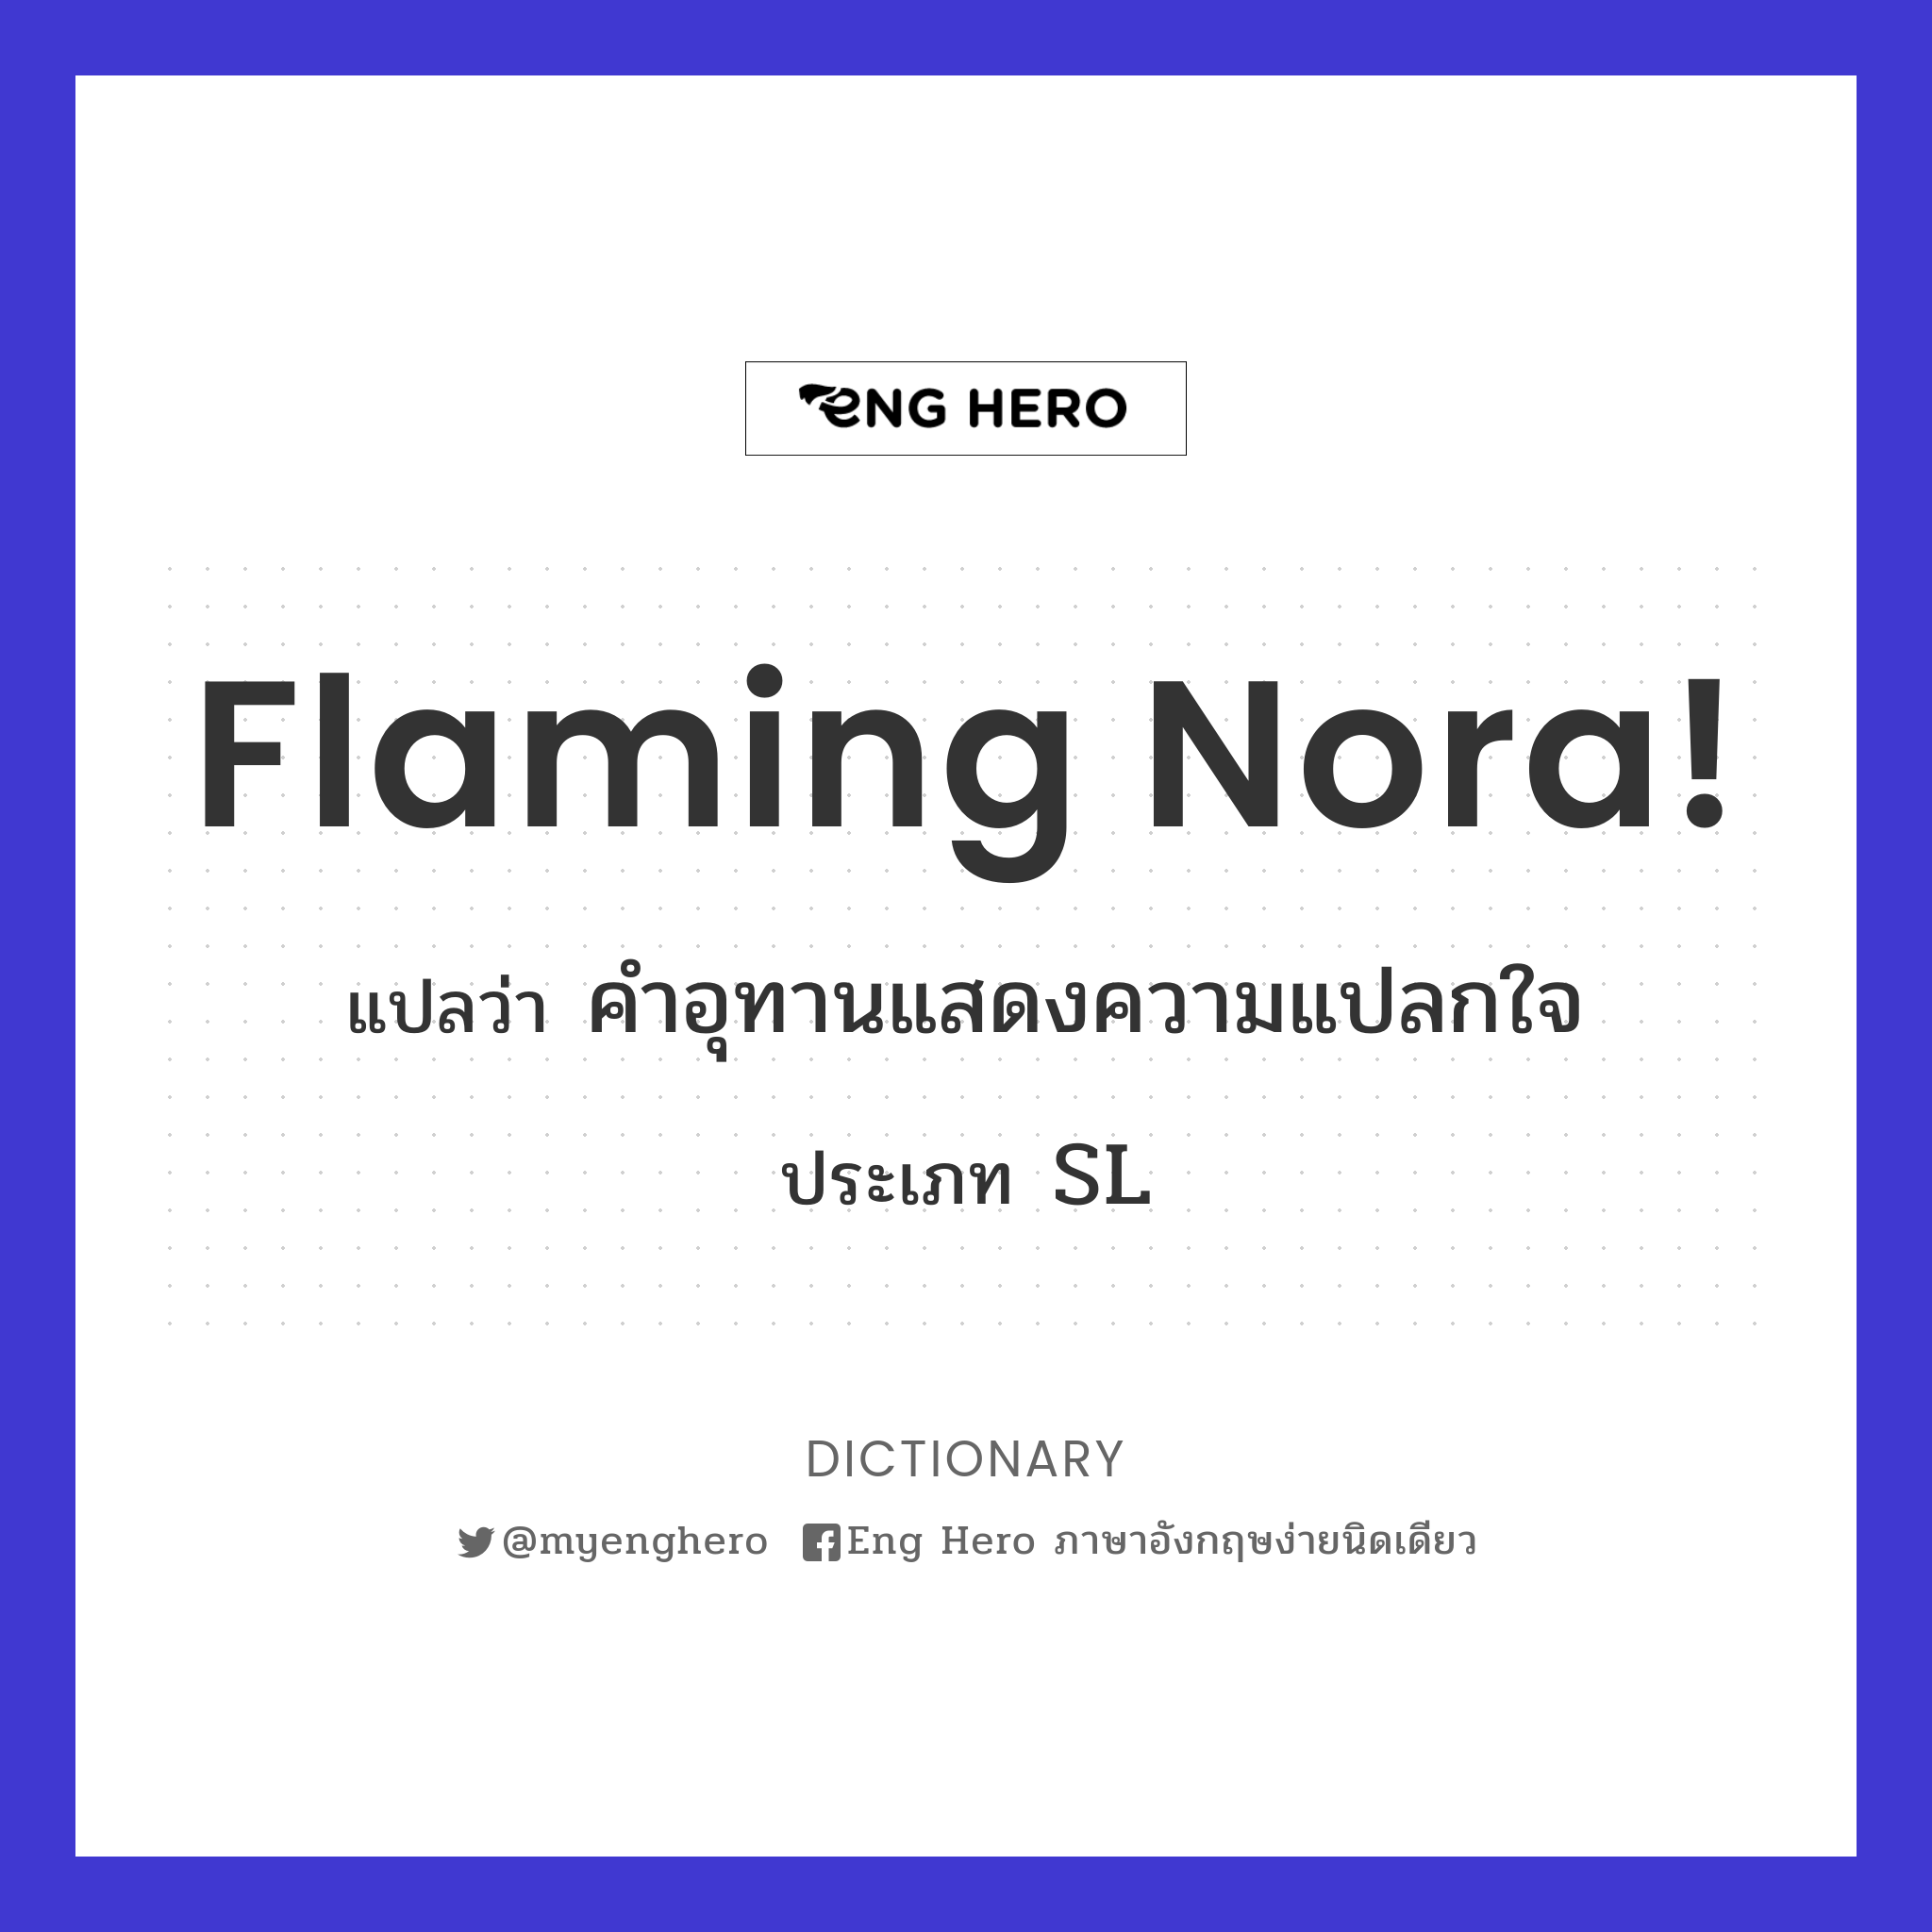 flaming Nora!